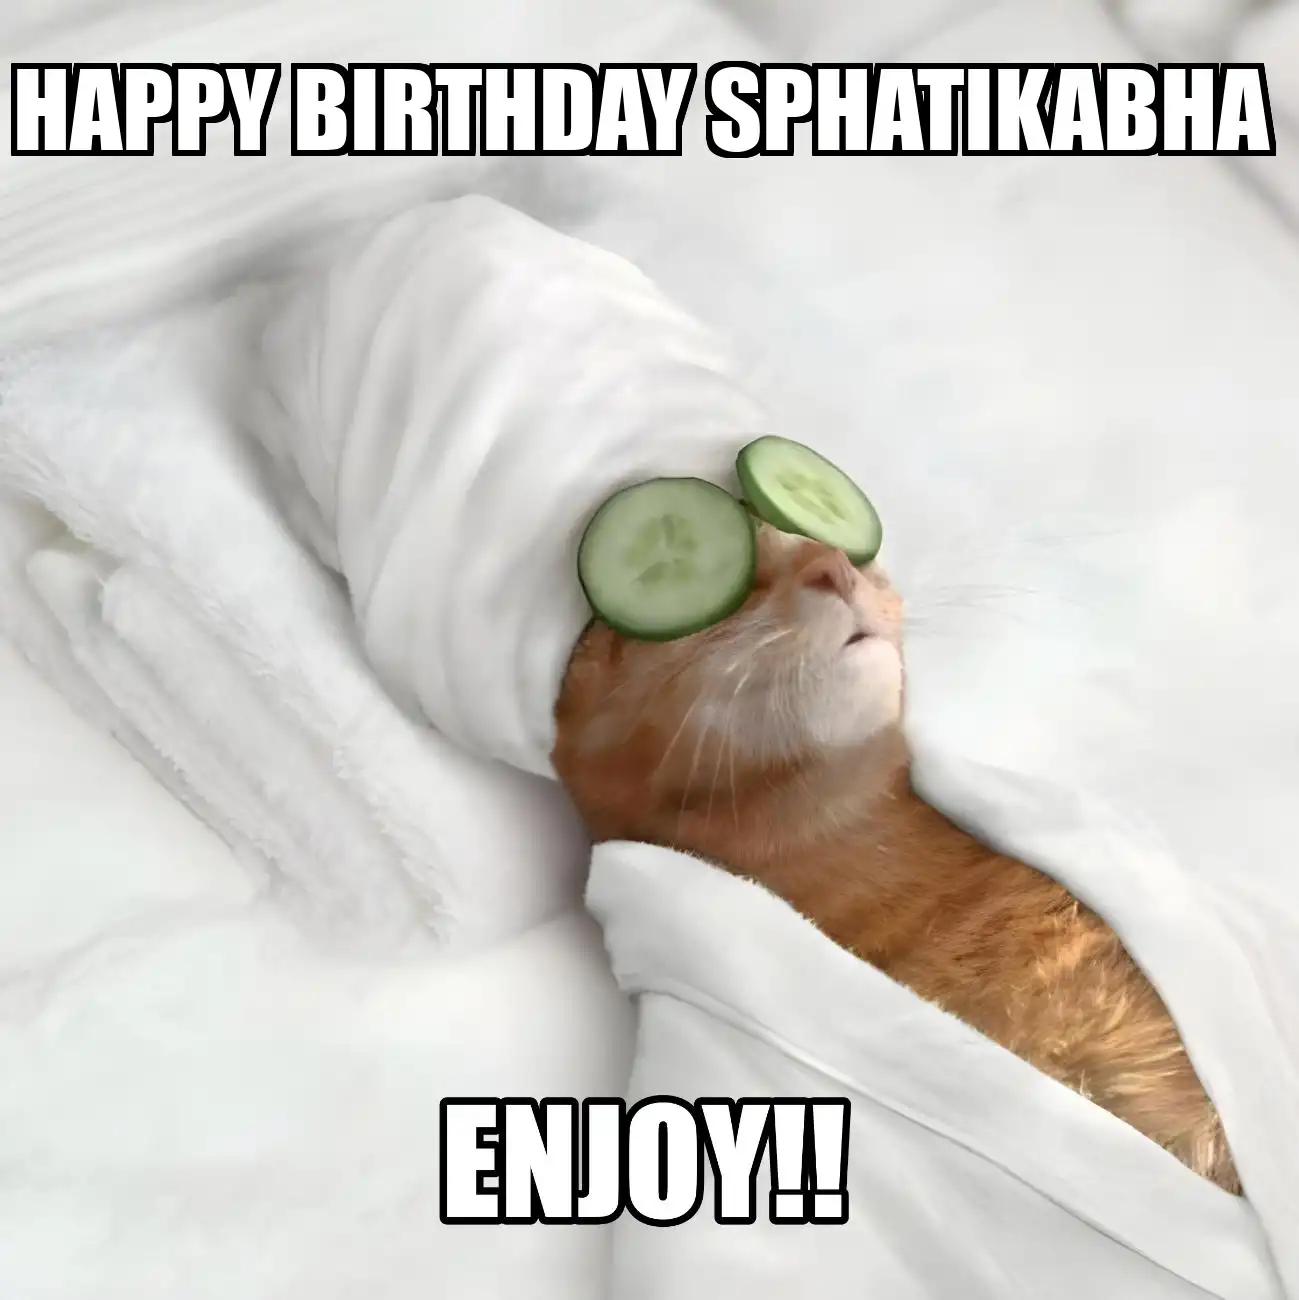 Happy Birthday Sphatikabha Enjoy Cat Meme